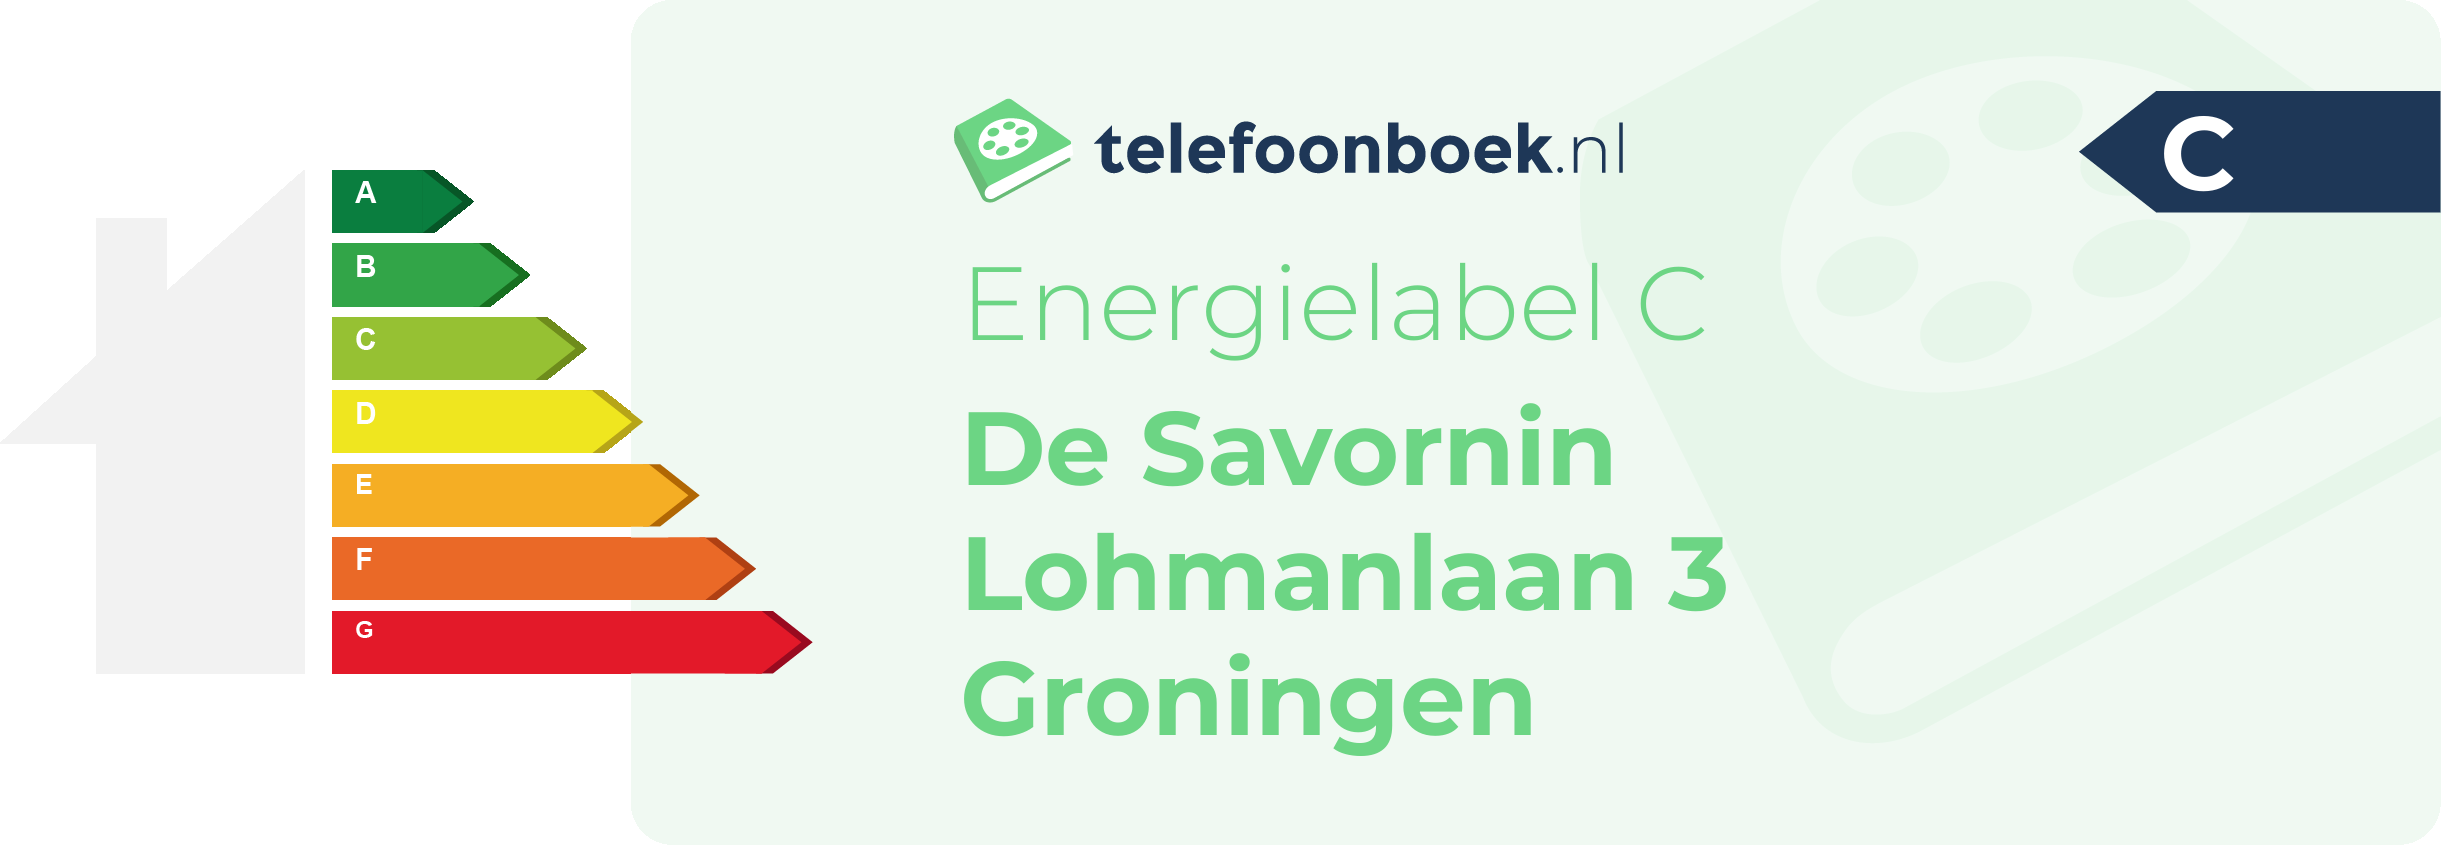 Energielabel De Savornin Lohmanlaan 3 Groningen